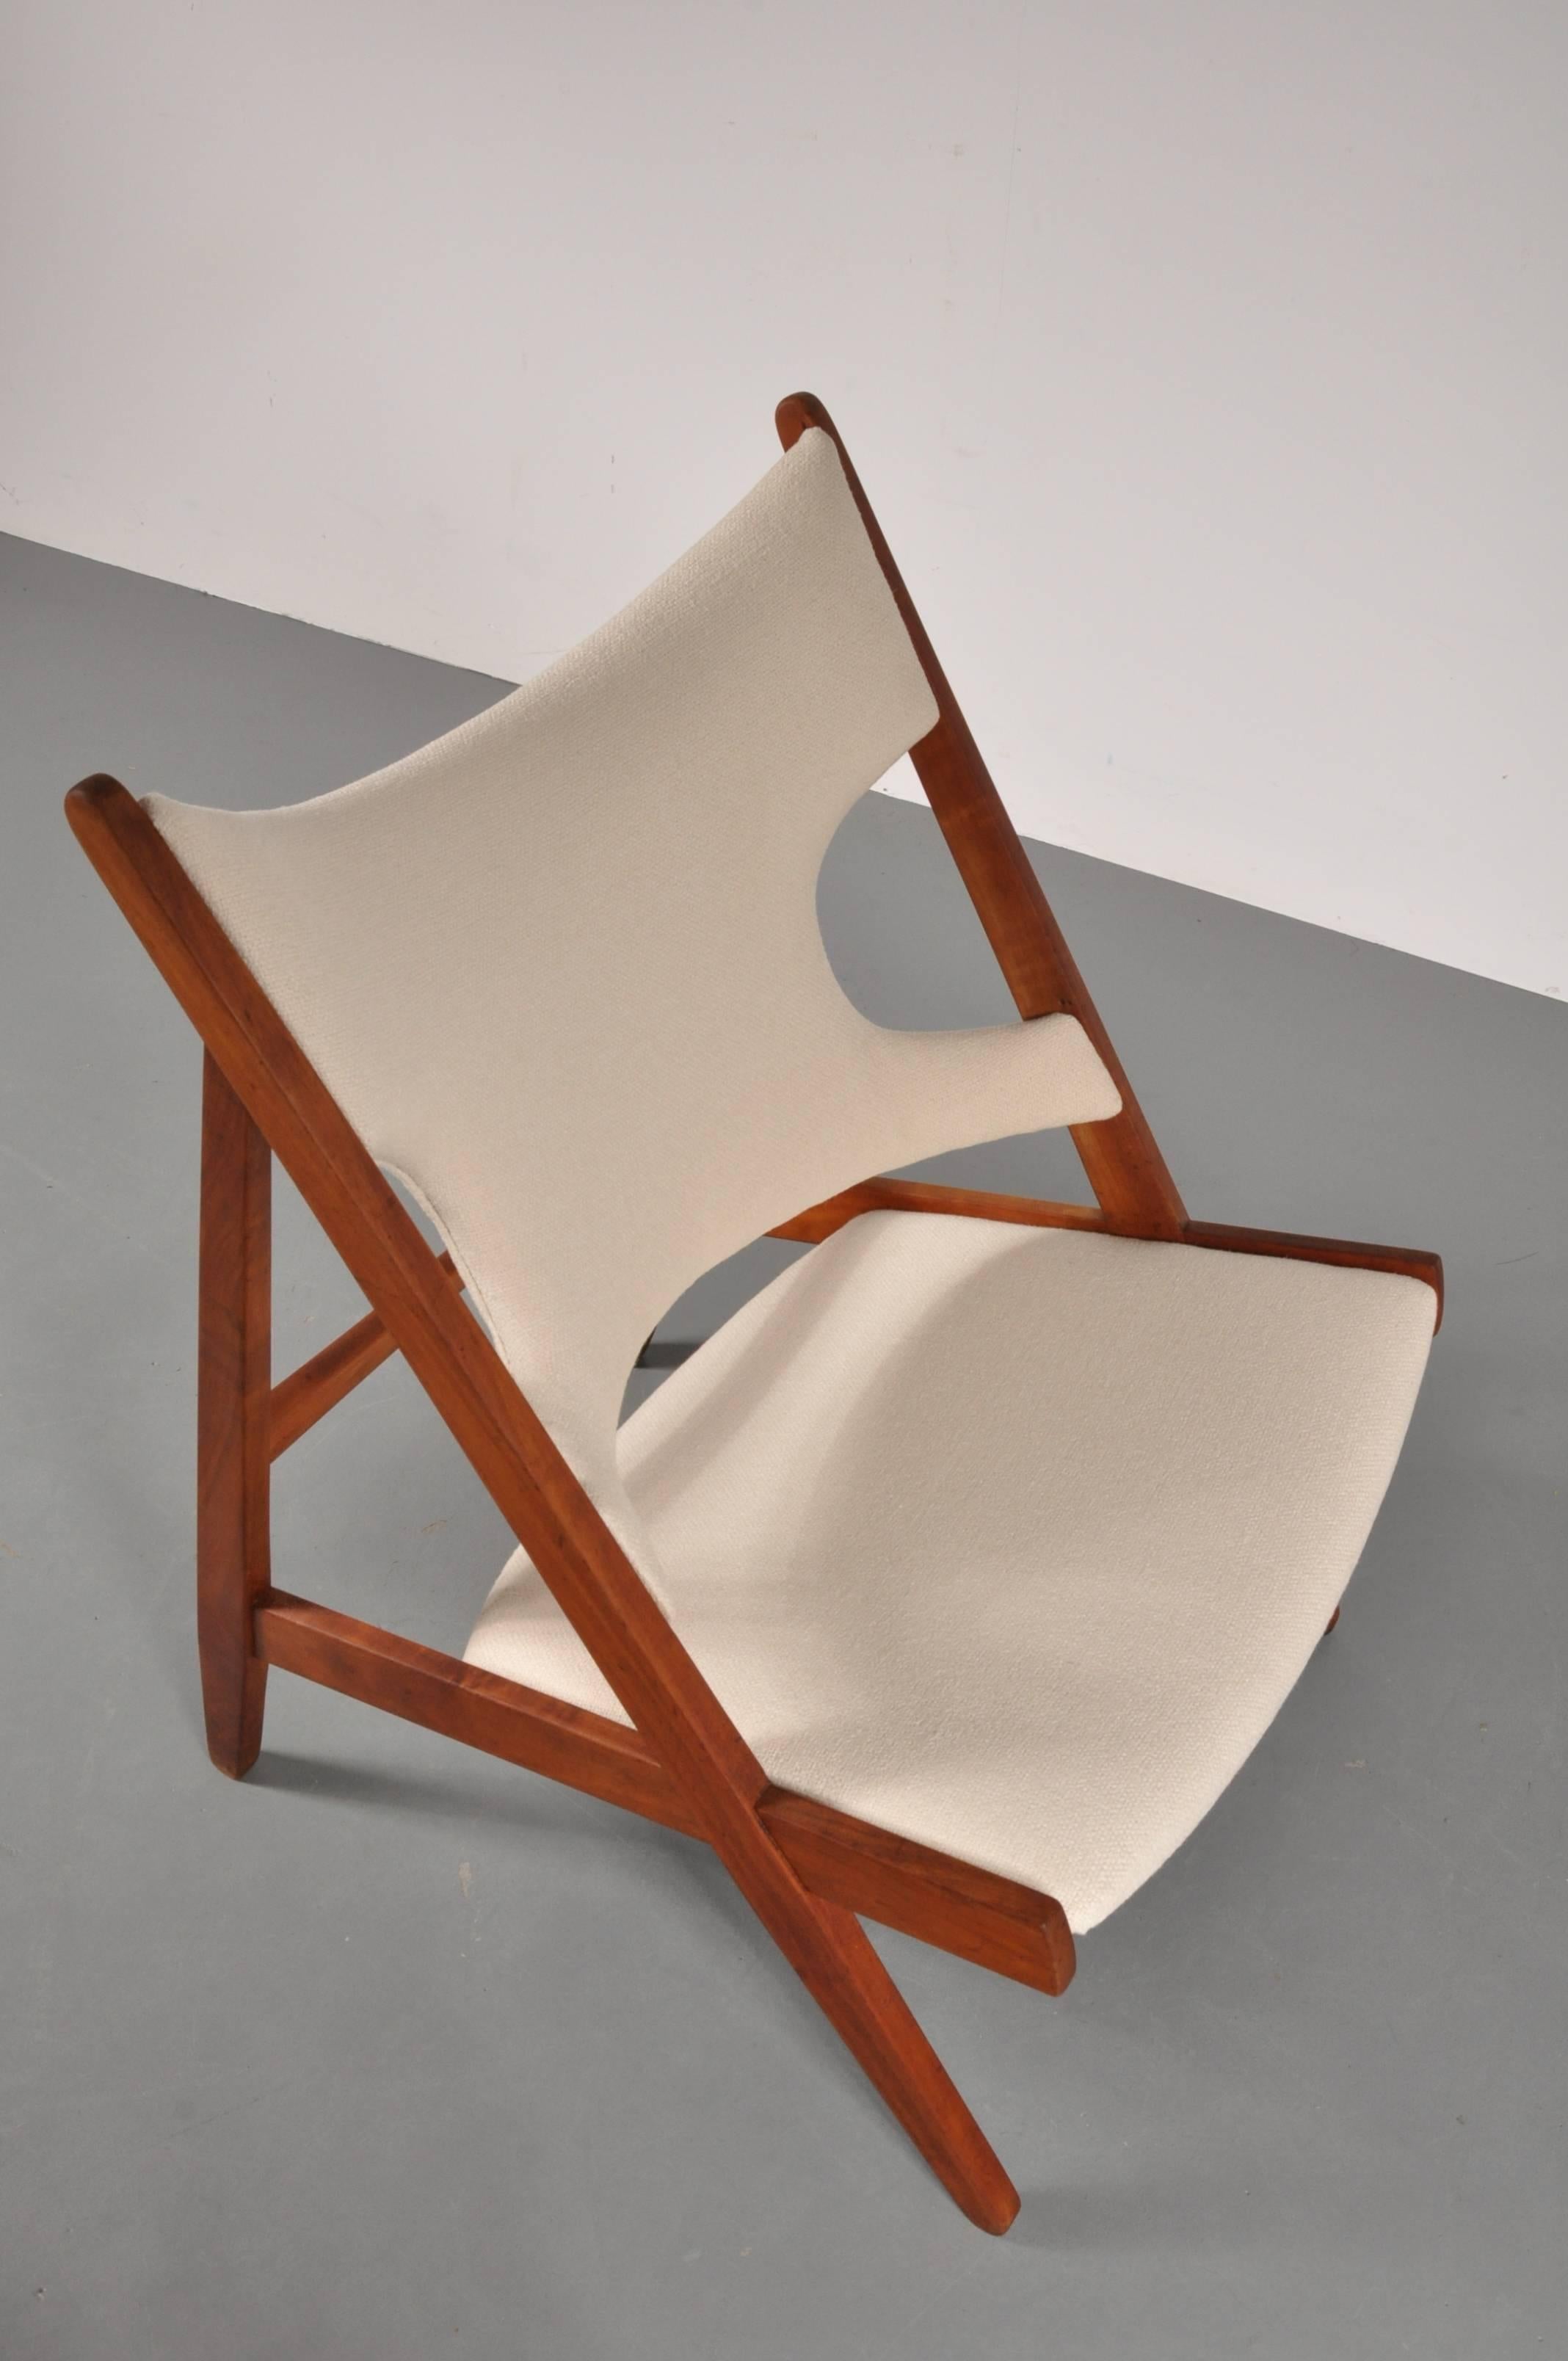 20th Century Knitting Chair by Ib Kofod Larsen for Christensen & Larsen, Denmark 1950